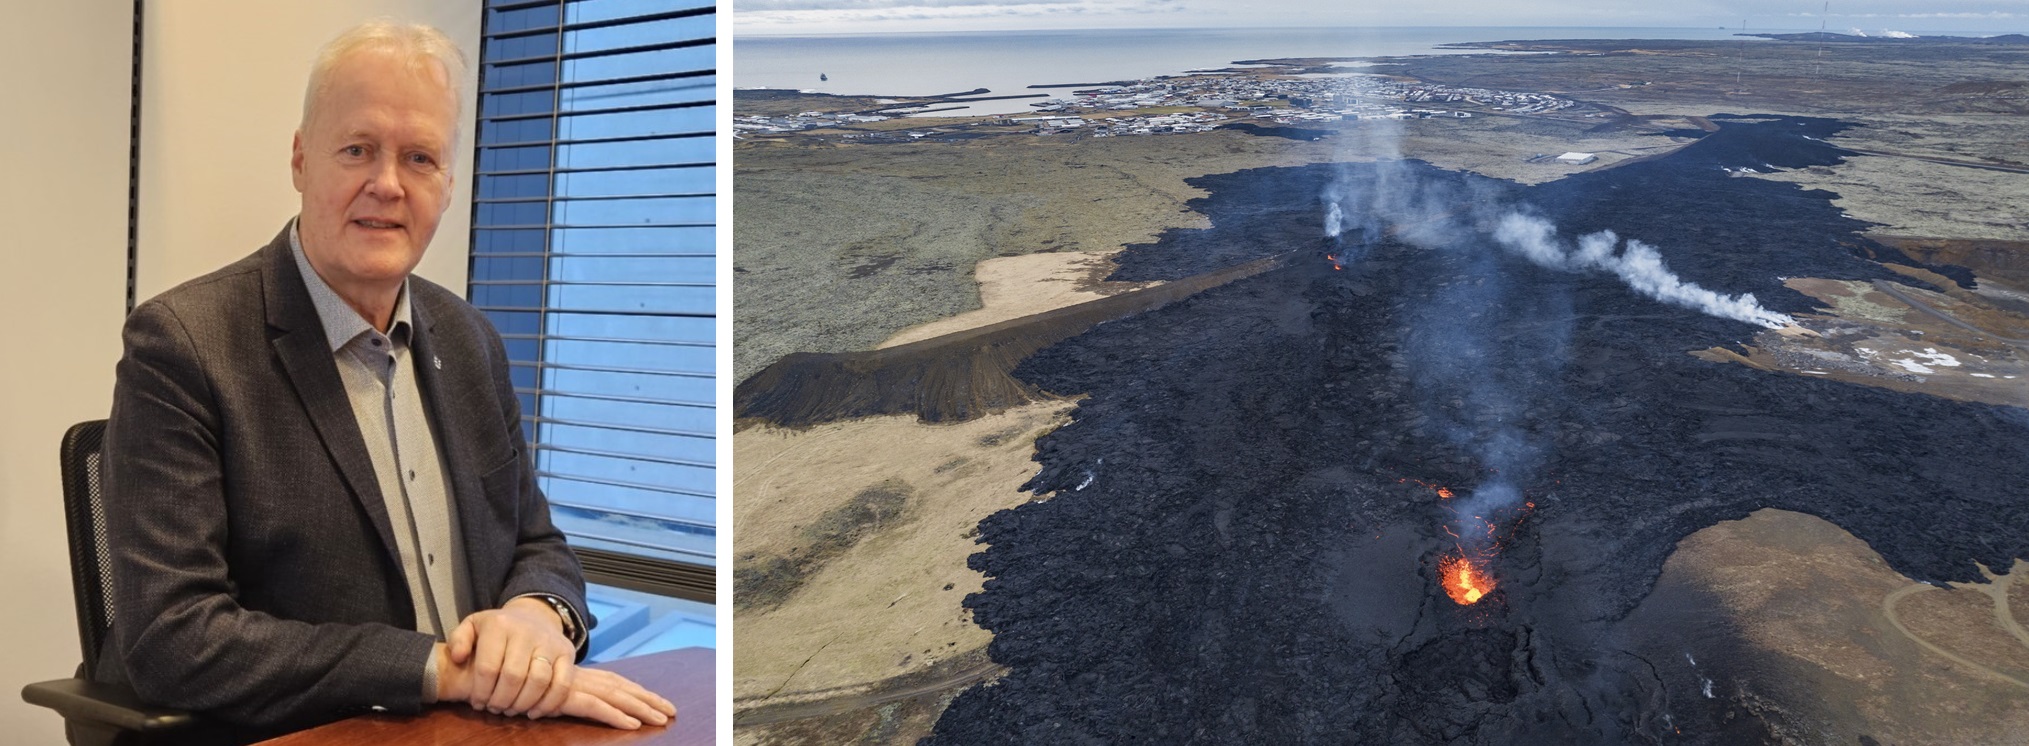 Grindavíks ordfører: – Vet ikke når gjenoppbyggingen kan starte